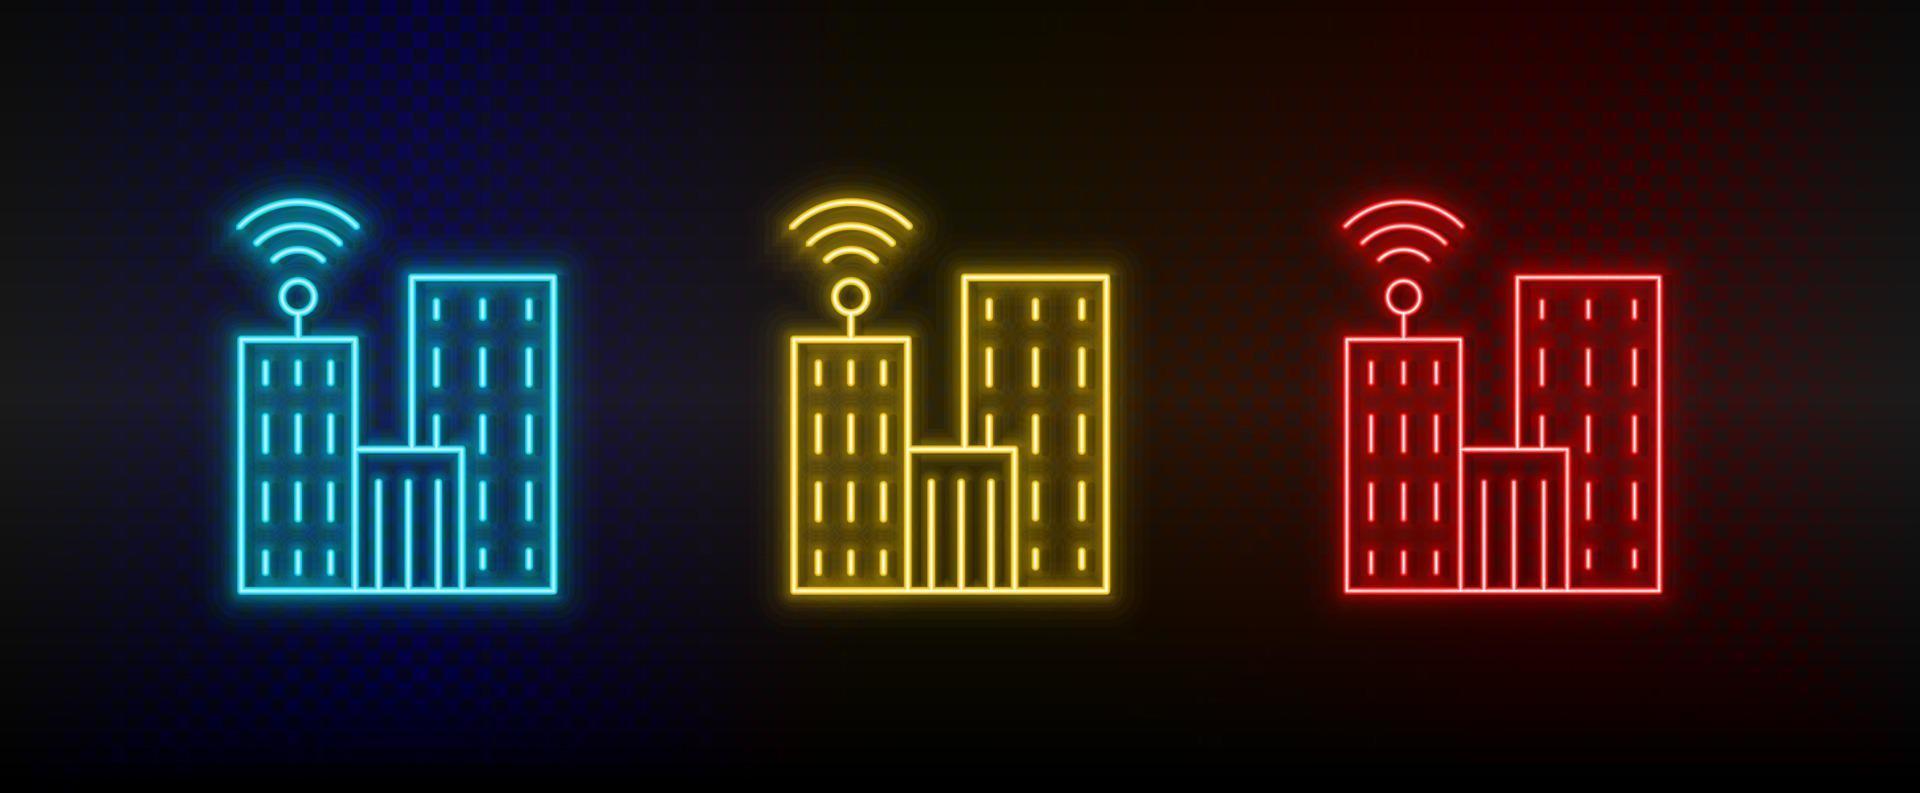 iconos de neón. edificio de televisión de comunicación. conjunto de icono de vector de neón rojo, azul, amarillo sobre fondo oscuro